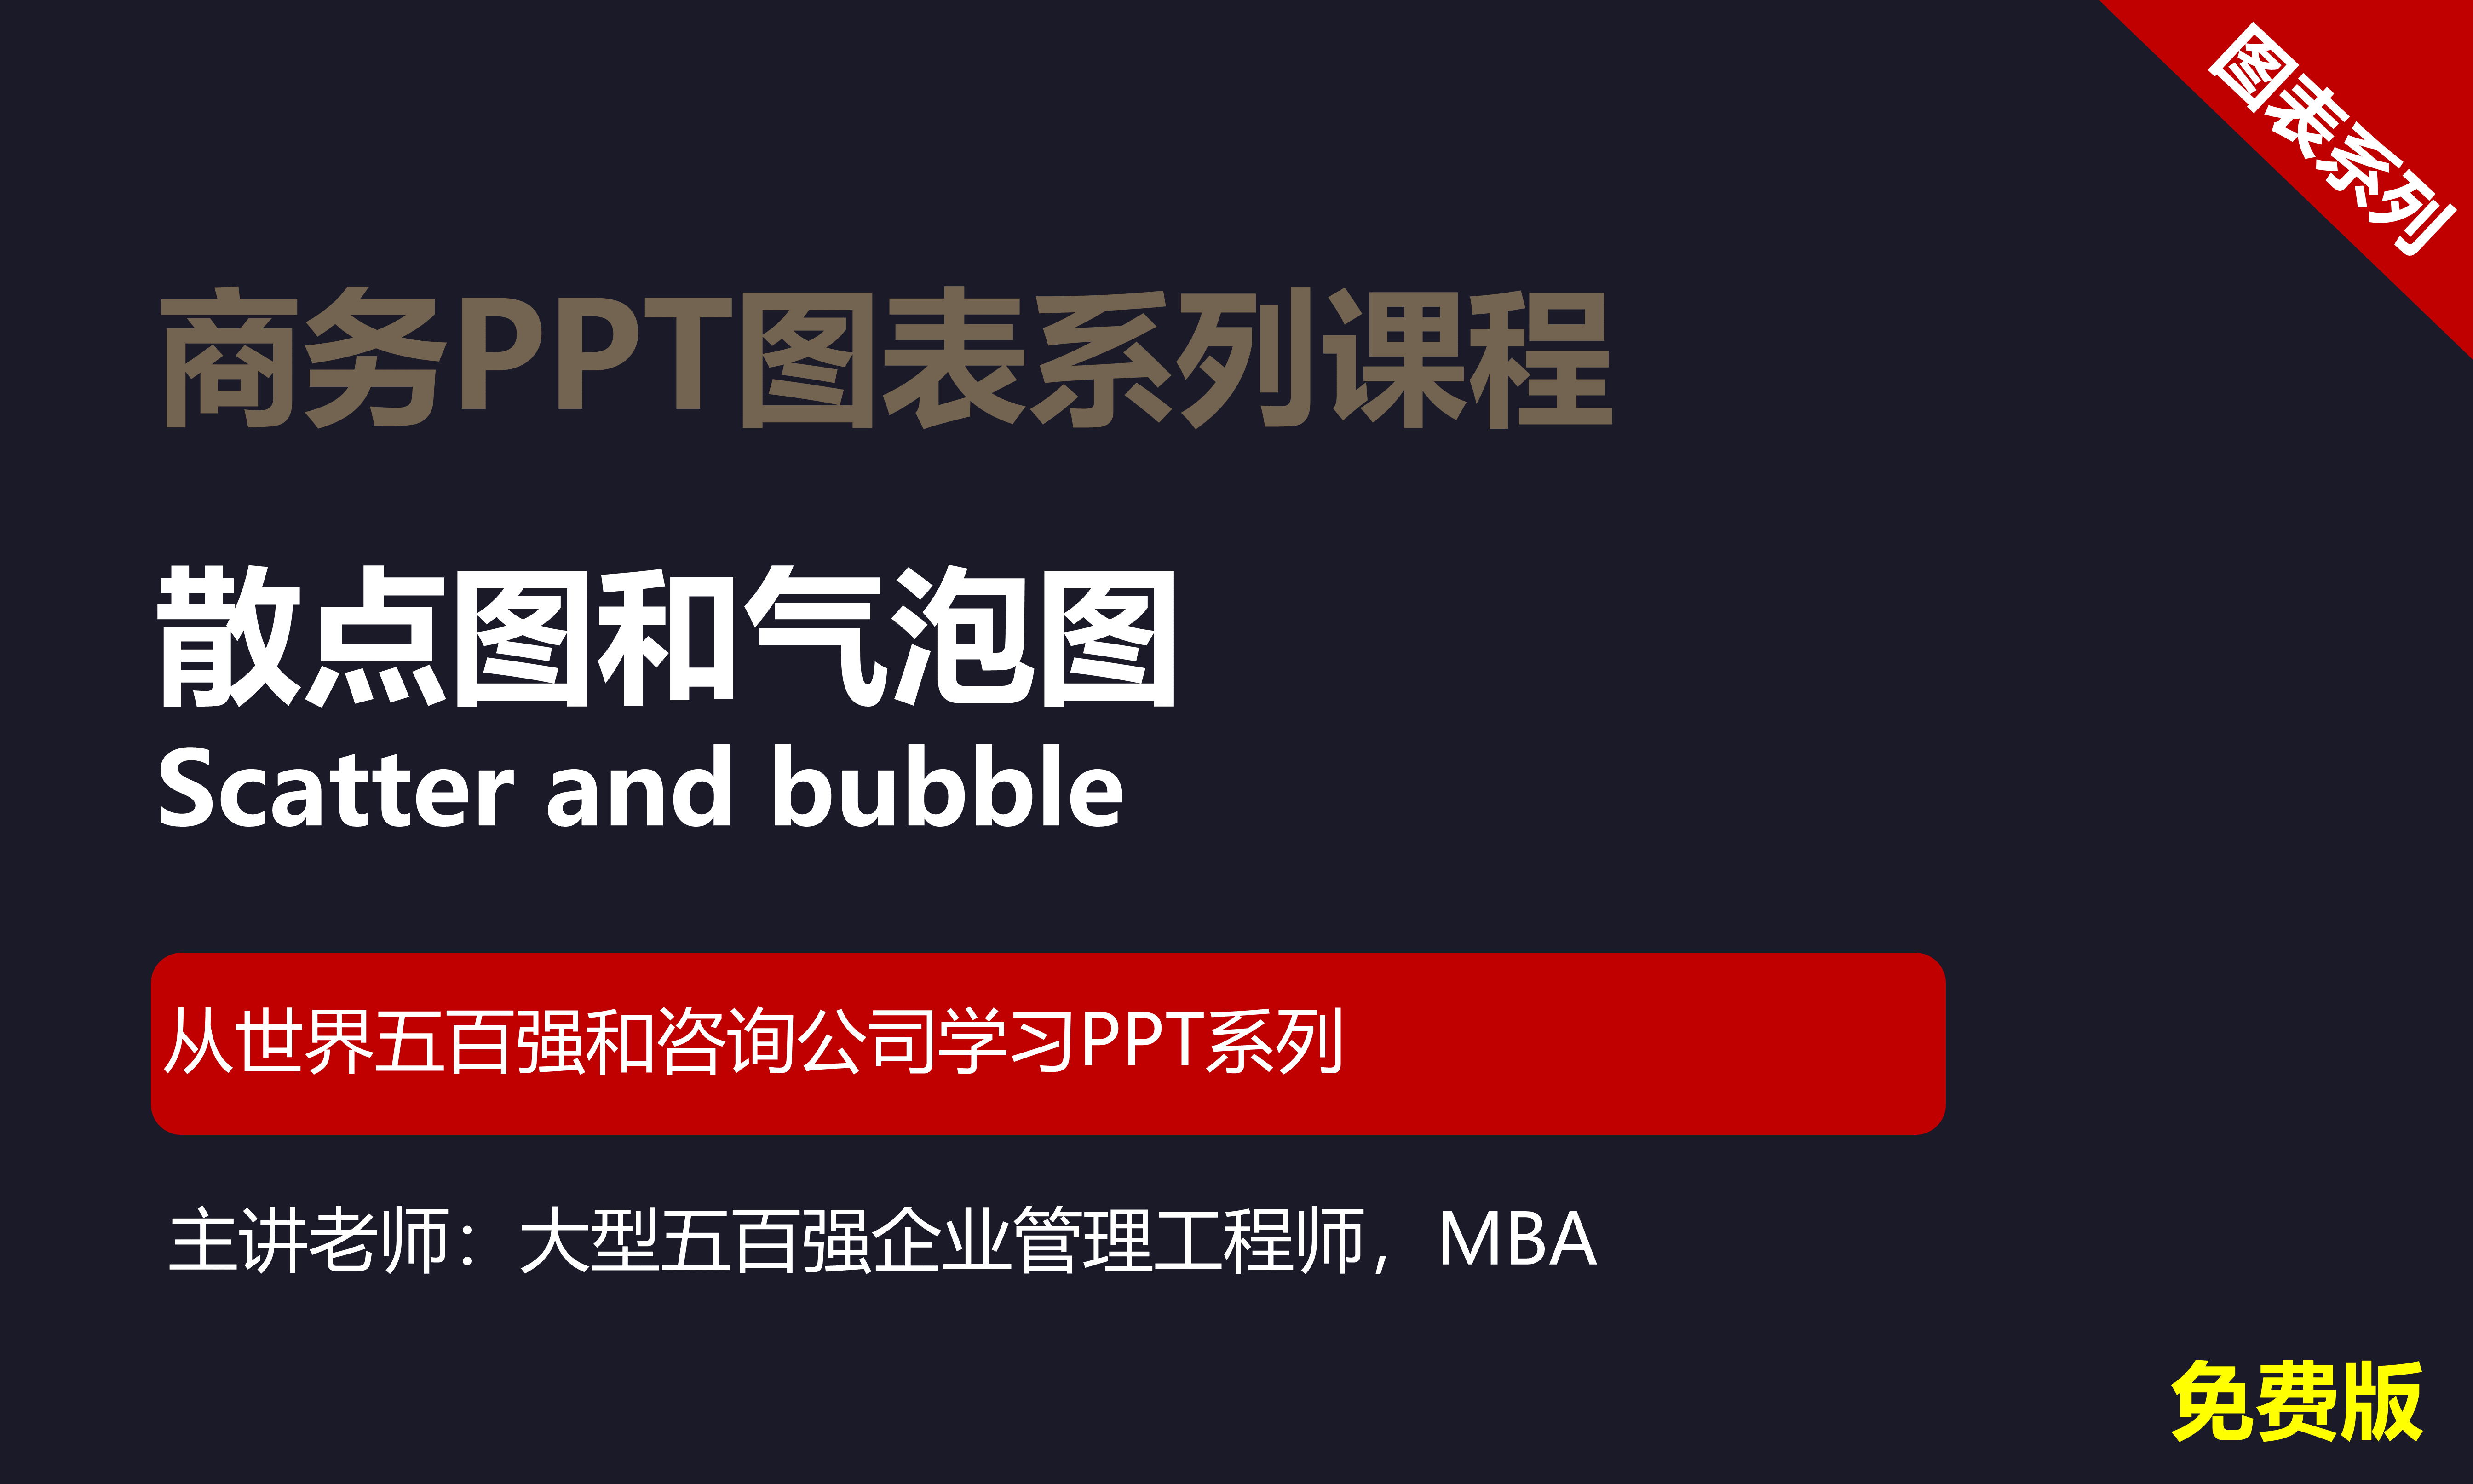 【司马懿】商务PPT设计高级图表篇07【散点图及气泡图】免费版